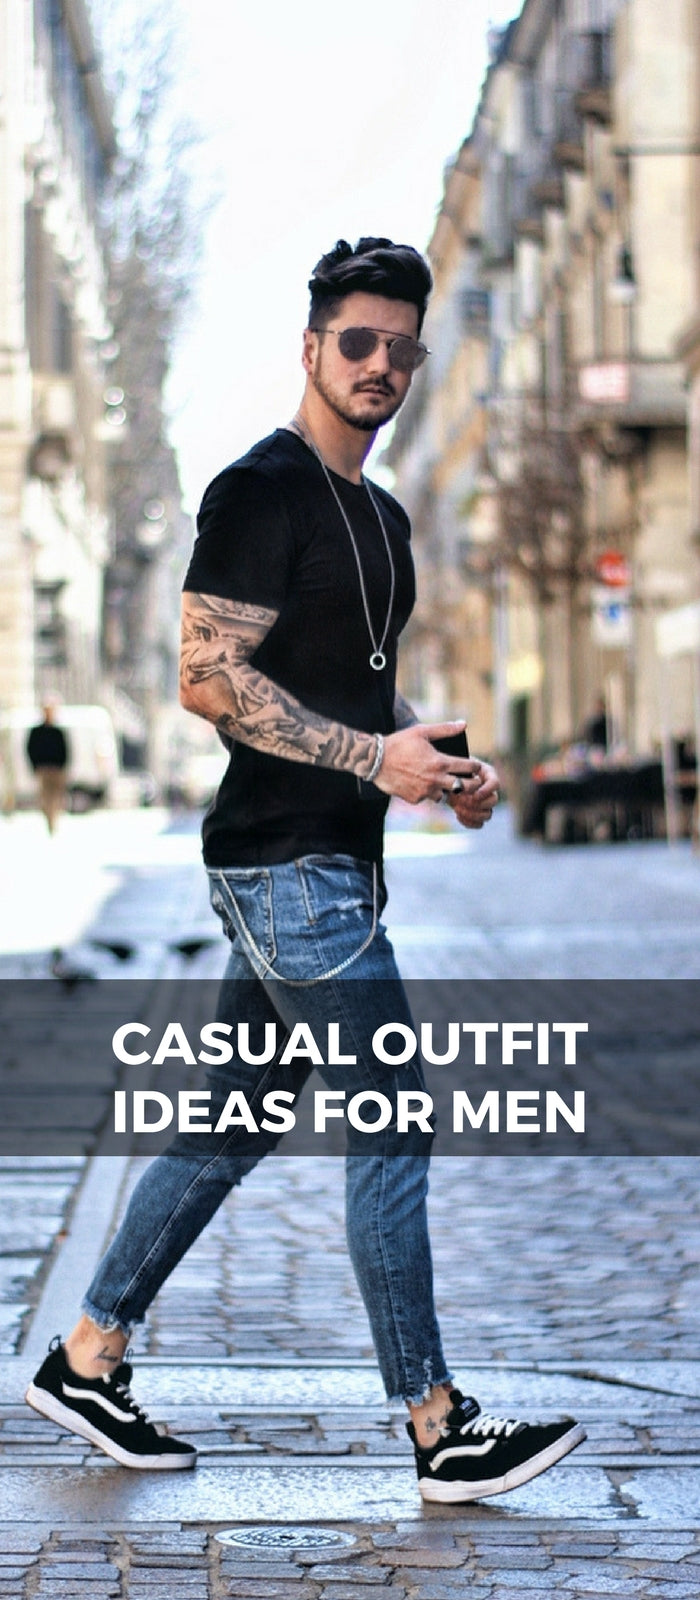 Casual_Outfit_ideas_For_Men_2_c76c6344 db41 42fc a47f 0b328d45df7b